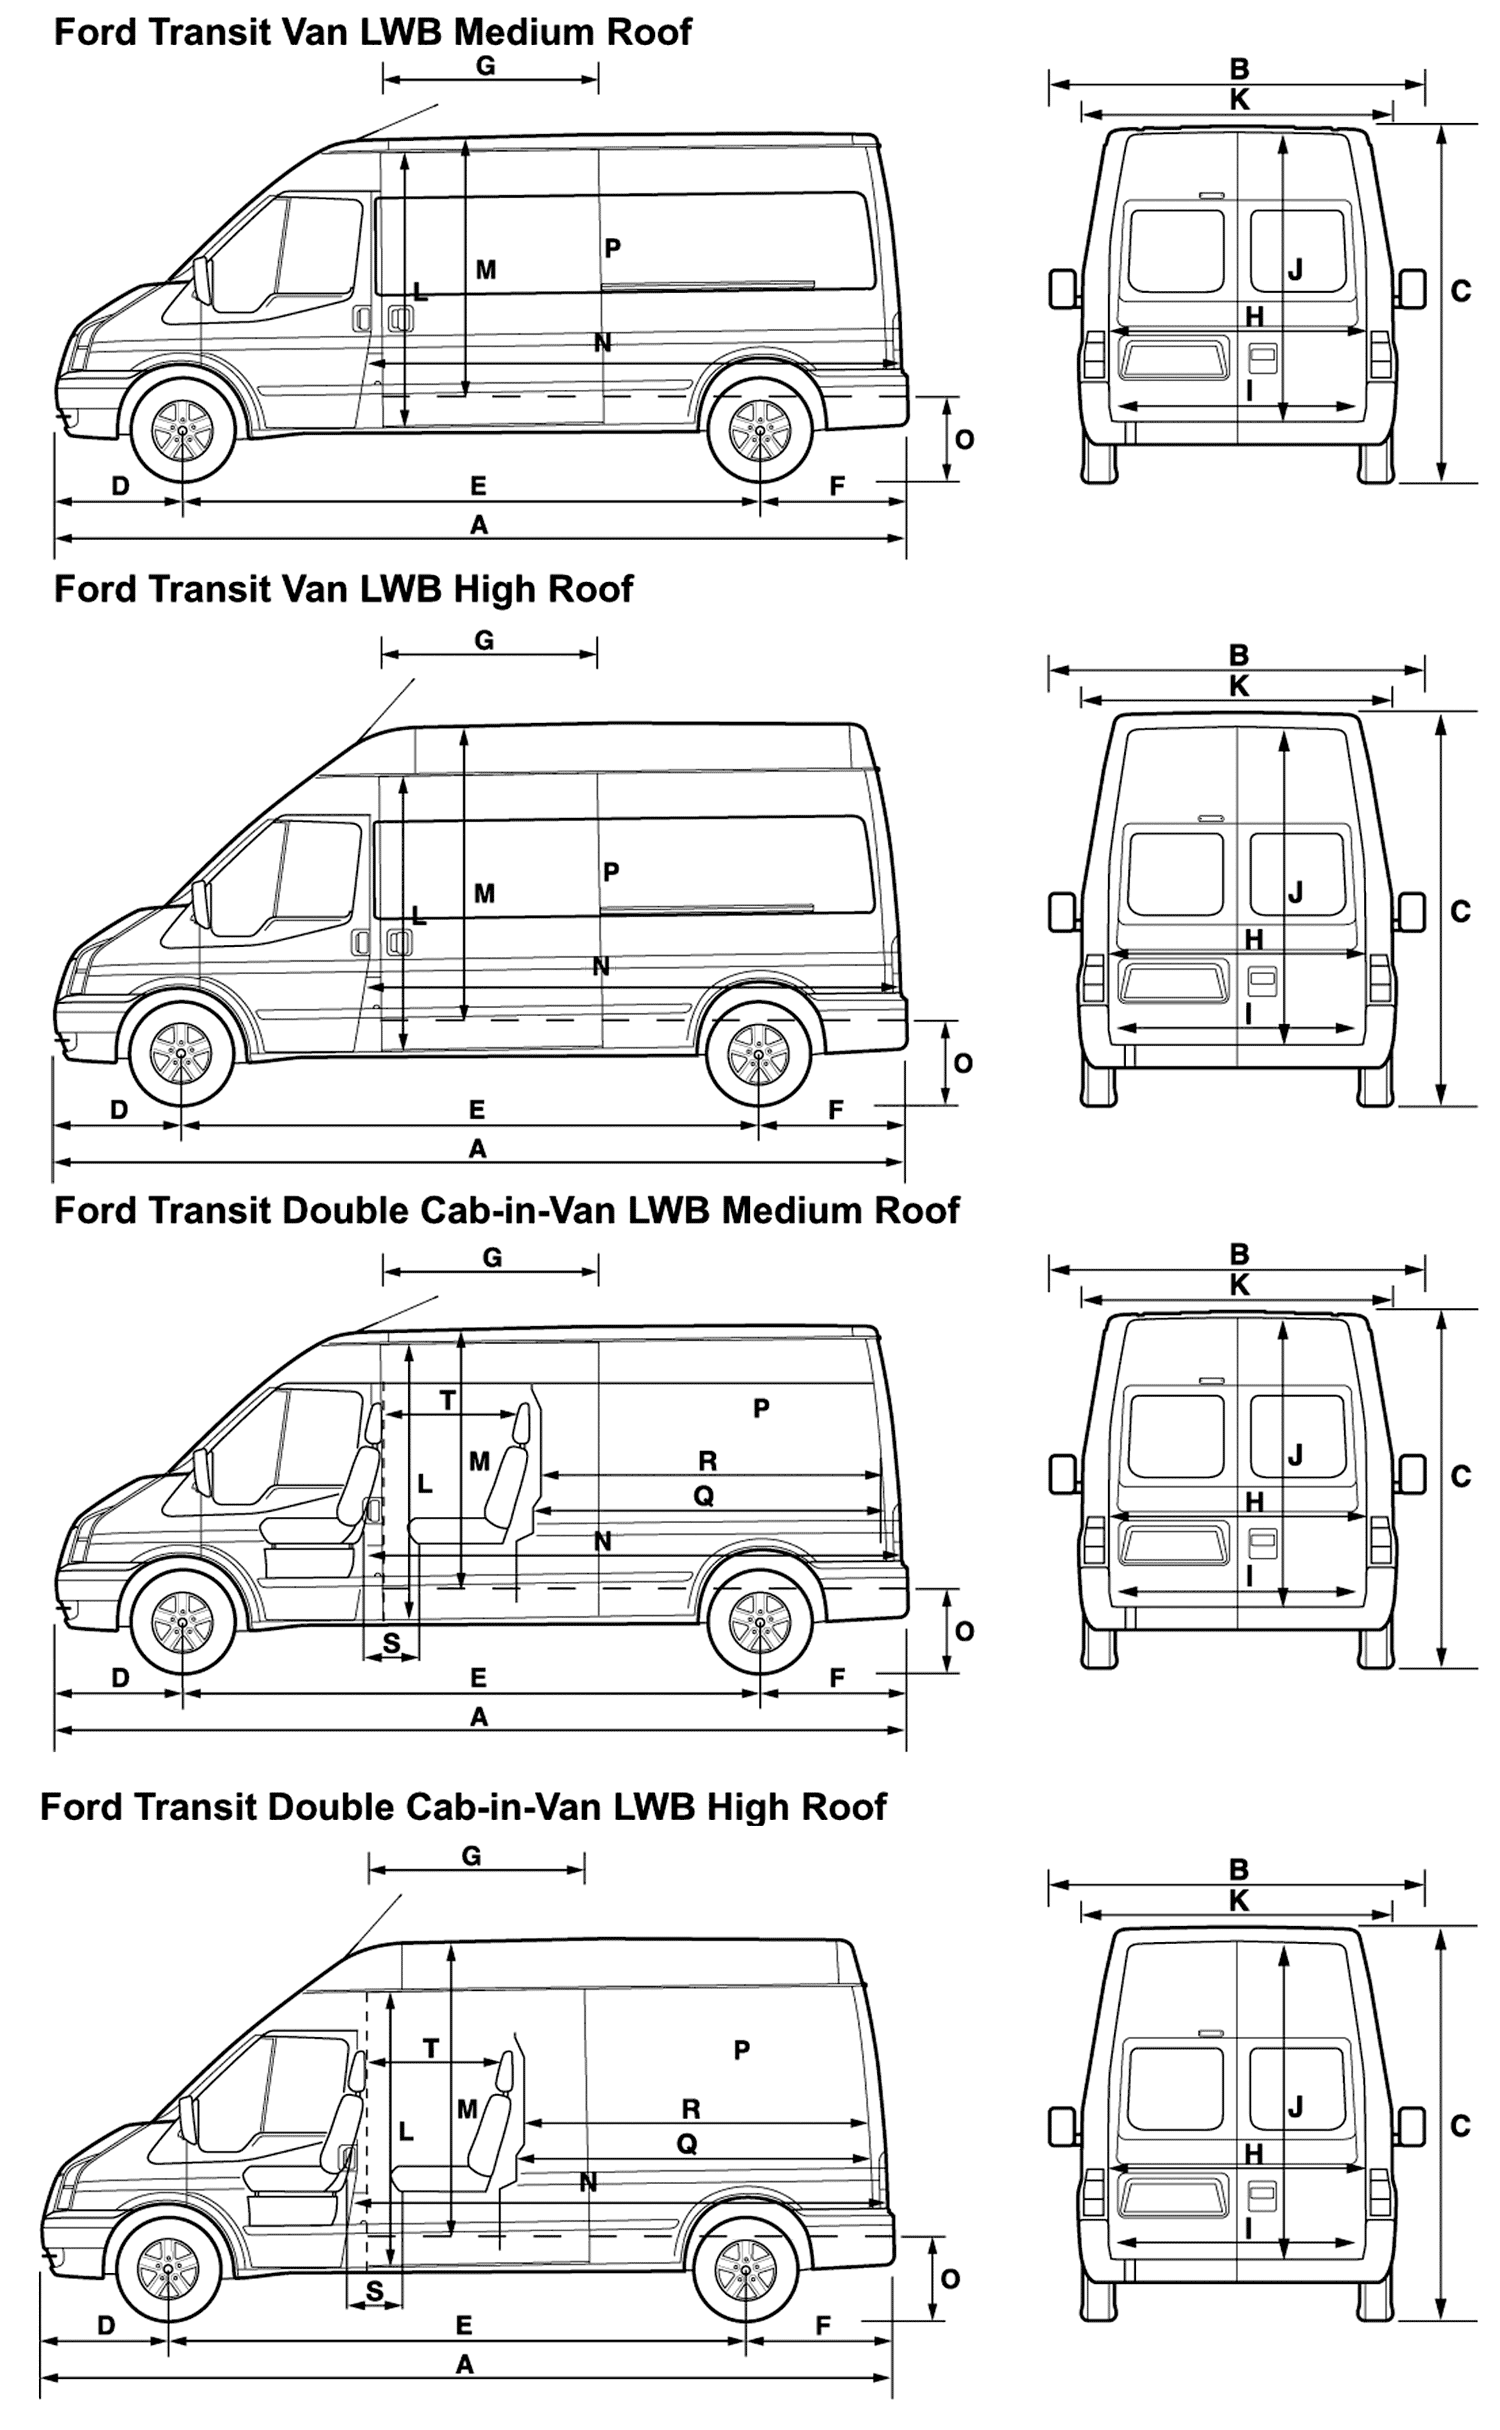 Технические характеристики Ford Transit / Форд Транзит ...